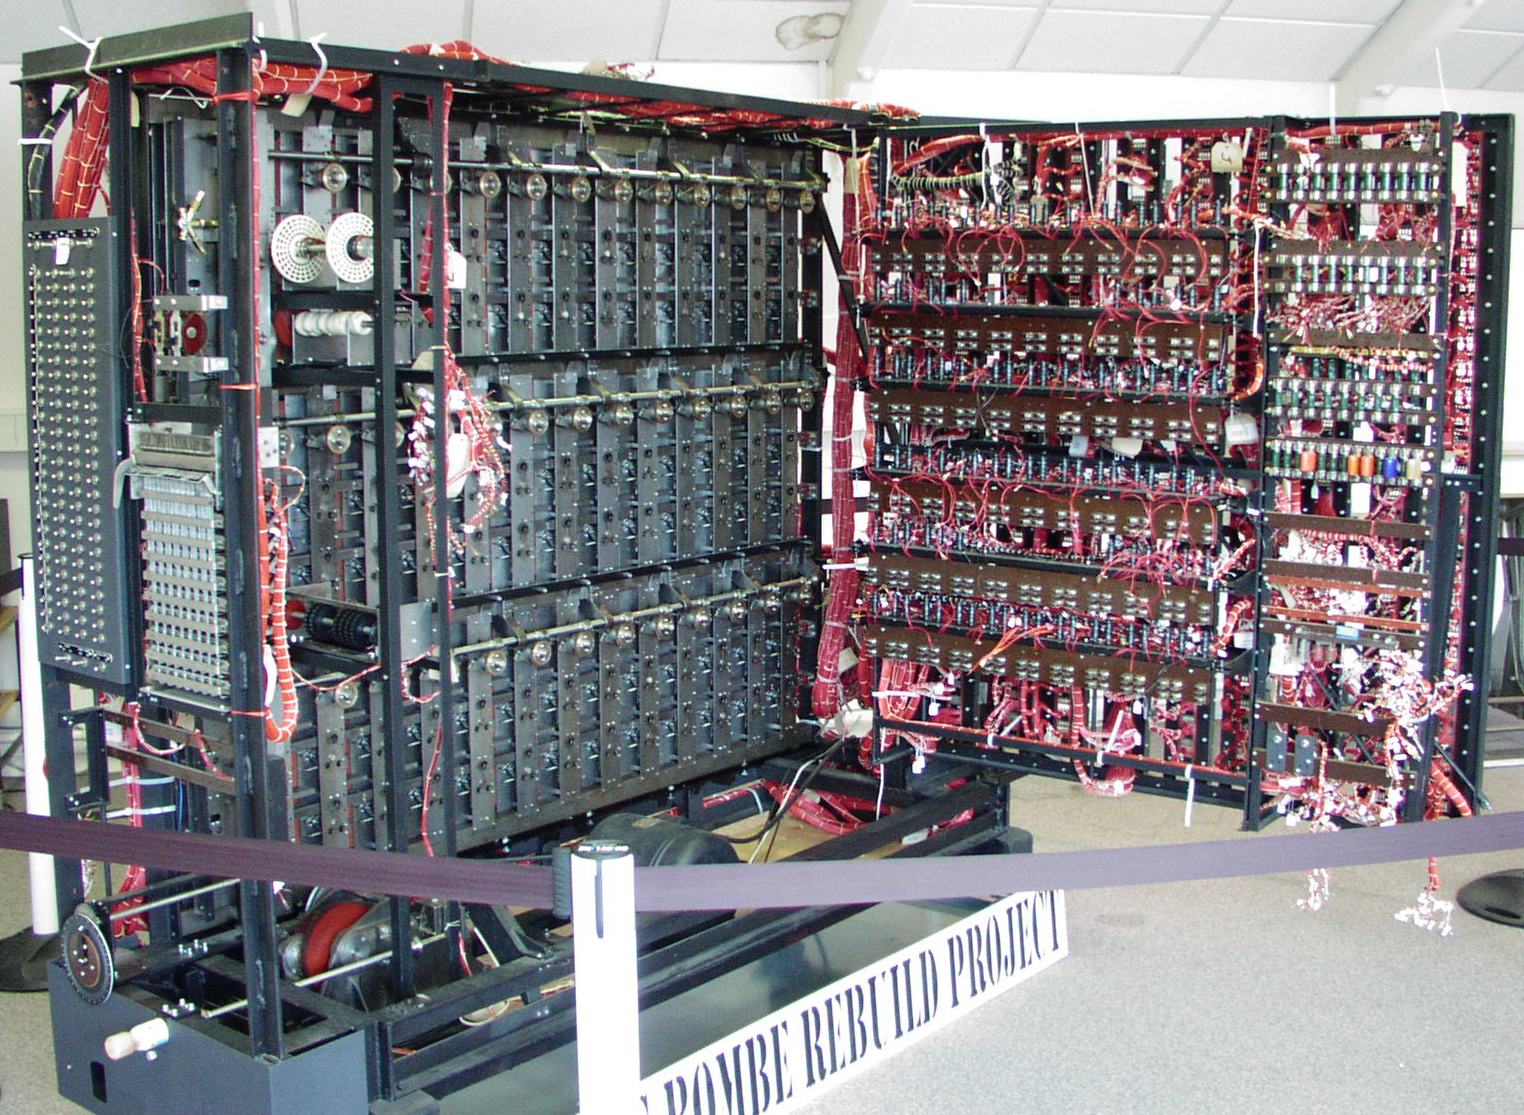 Reconstrução de Alan Turing código de quebrar o computador, Bombe